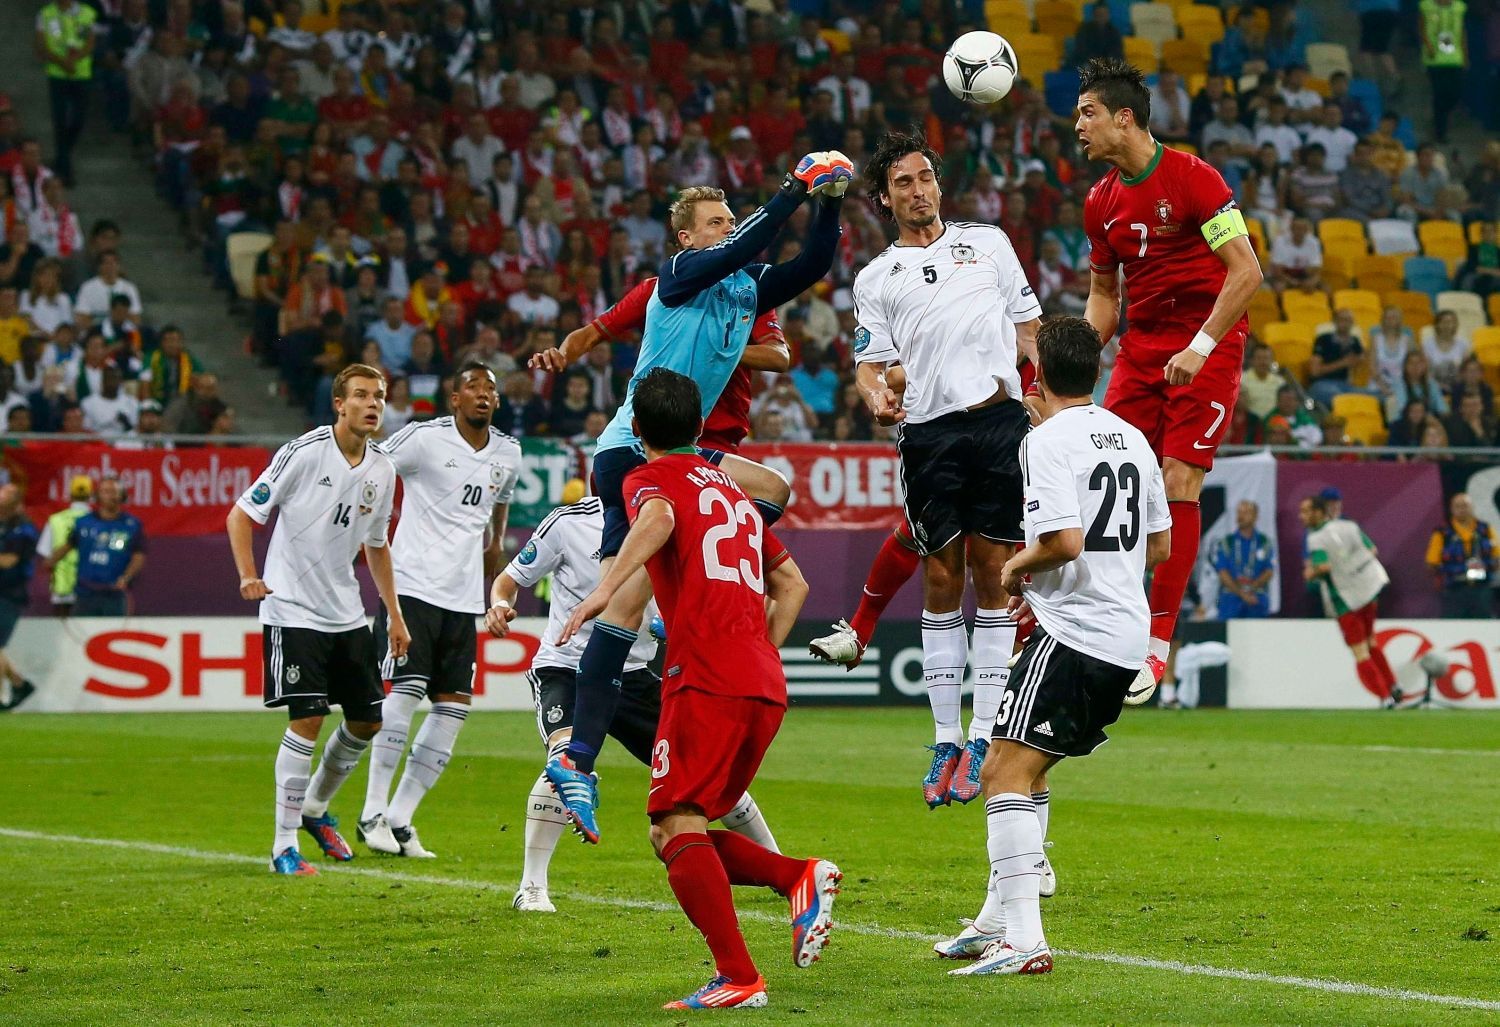 Brankář Manuel Neuer, Mats Hummels a Cristiano Ronaldo v utkání Německa s Portugalskem na Euru 2012